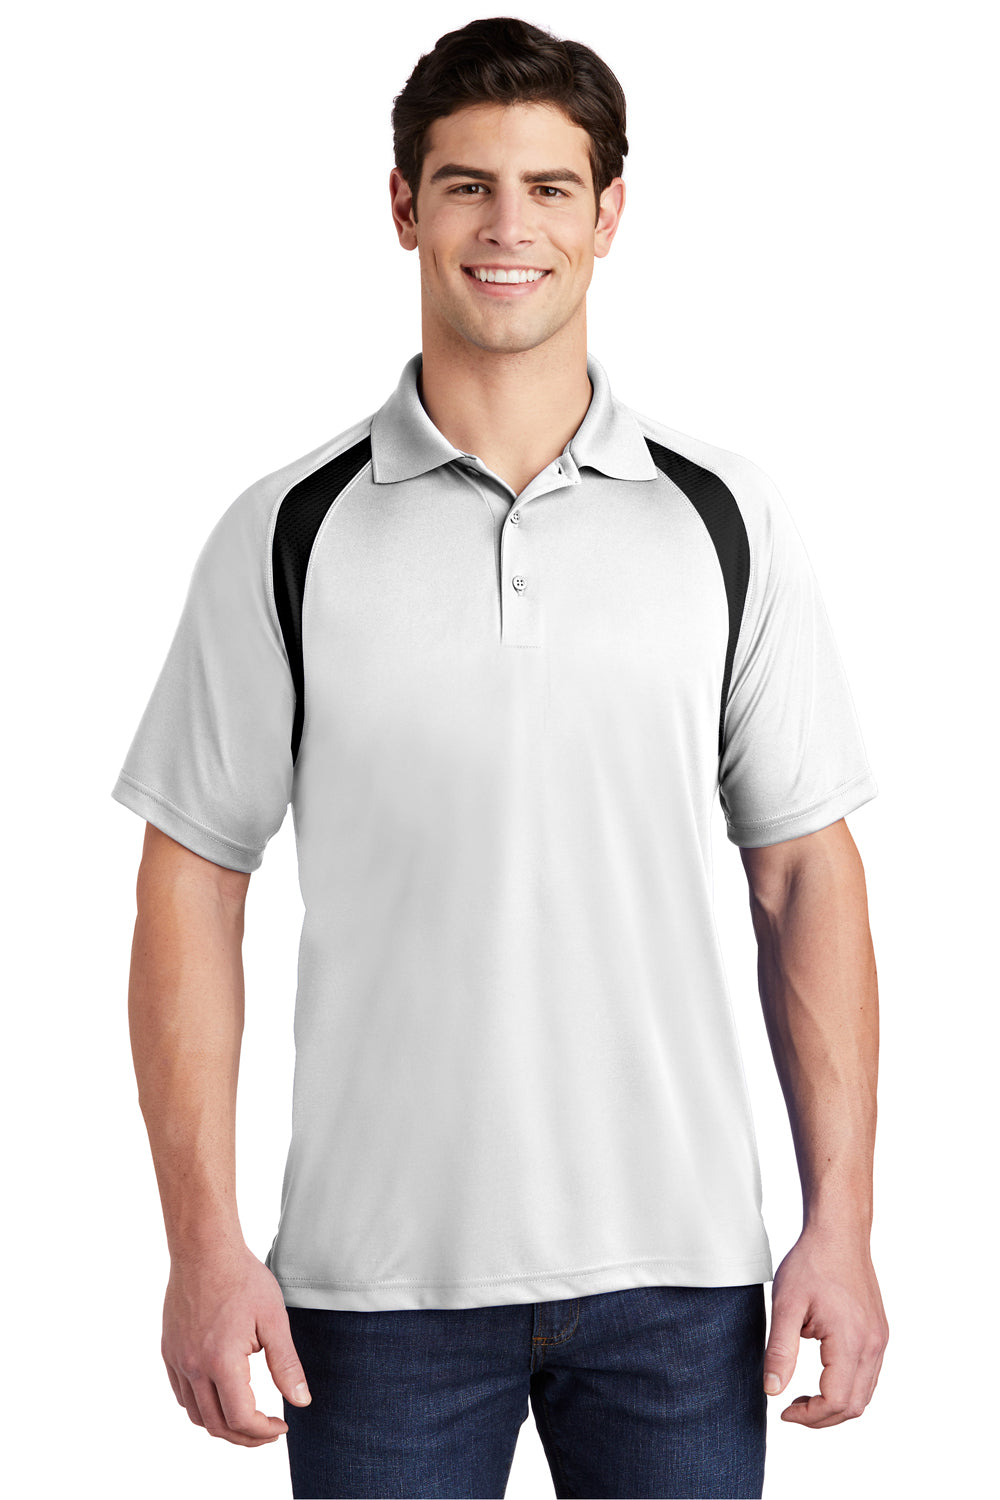 Sport-Tek T476 Mens Dry Zone Moisture Wicking Short Sleeve Polo Shirt White Front